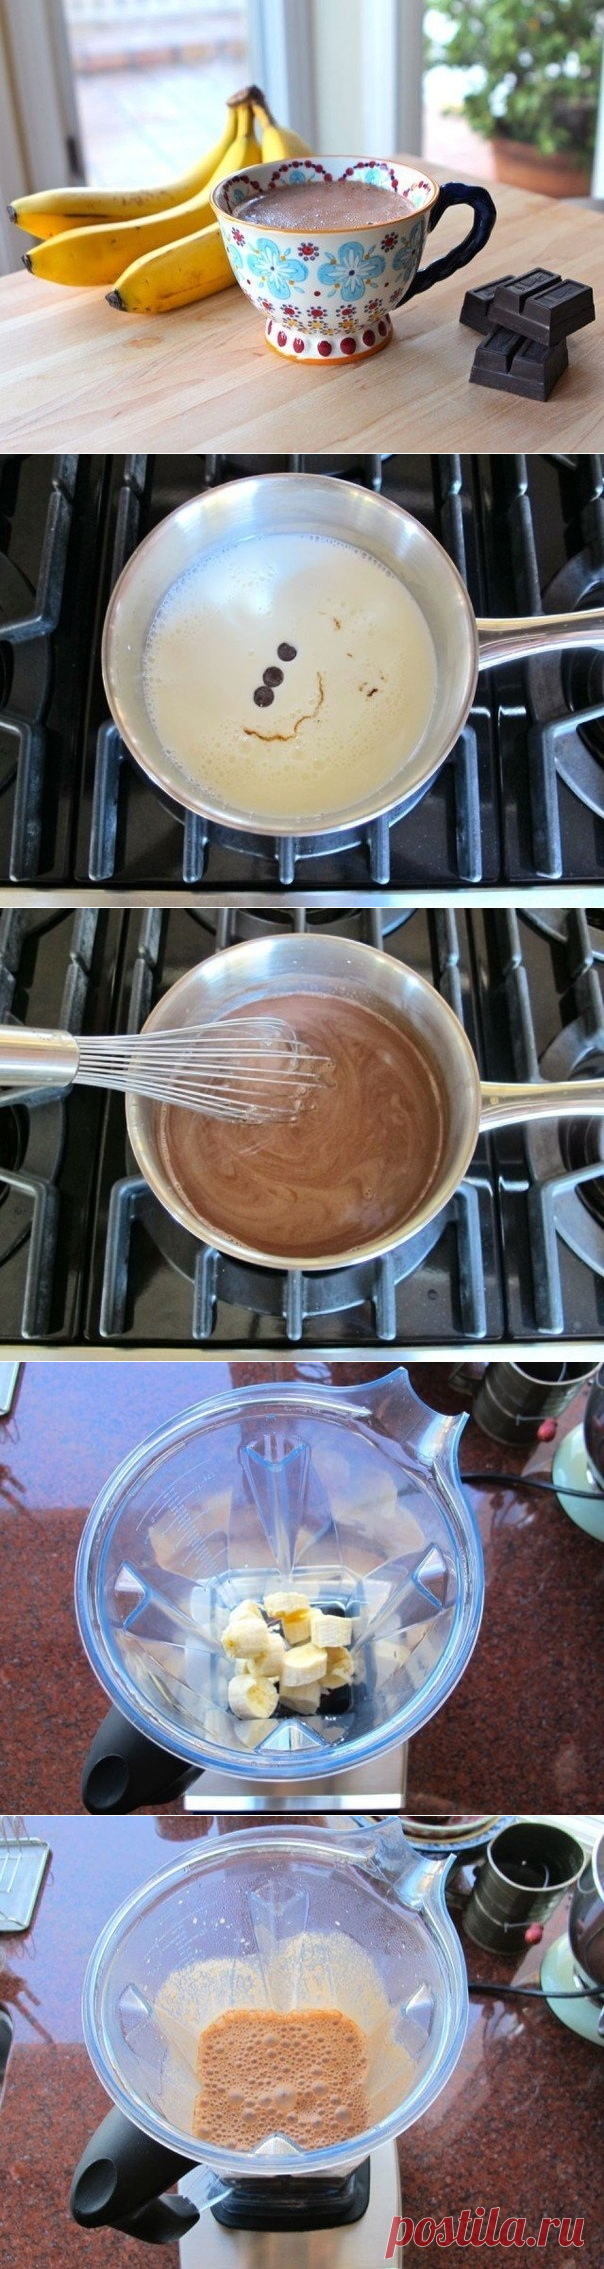 Как приготовить горячий банановый шоколад - рецепт, ингредиенты и фотографии